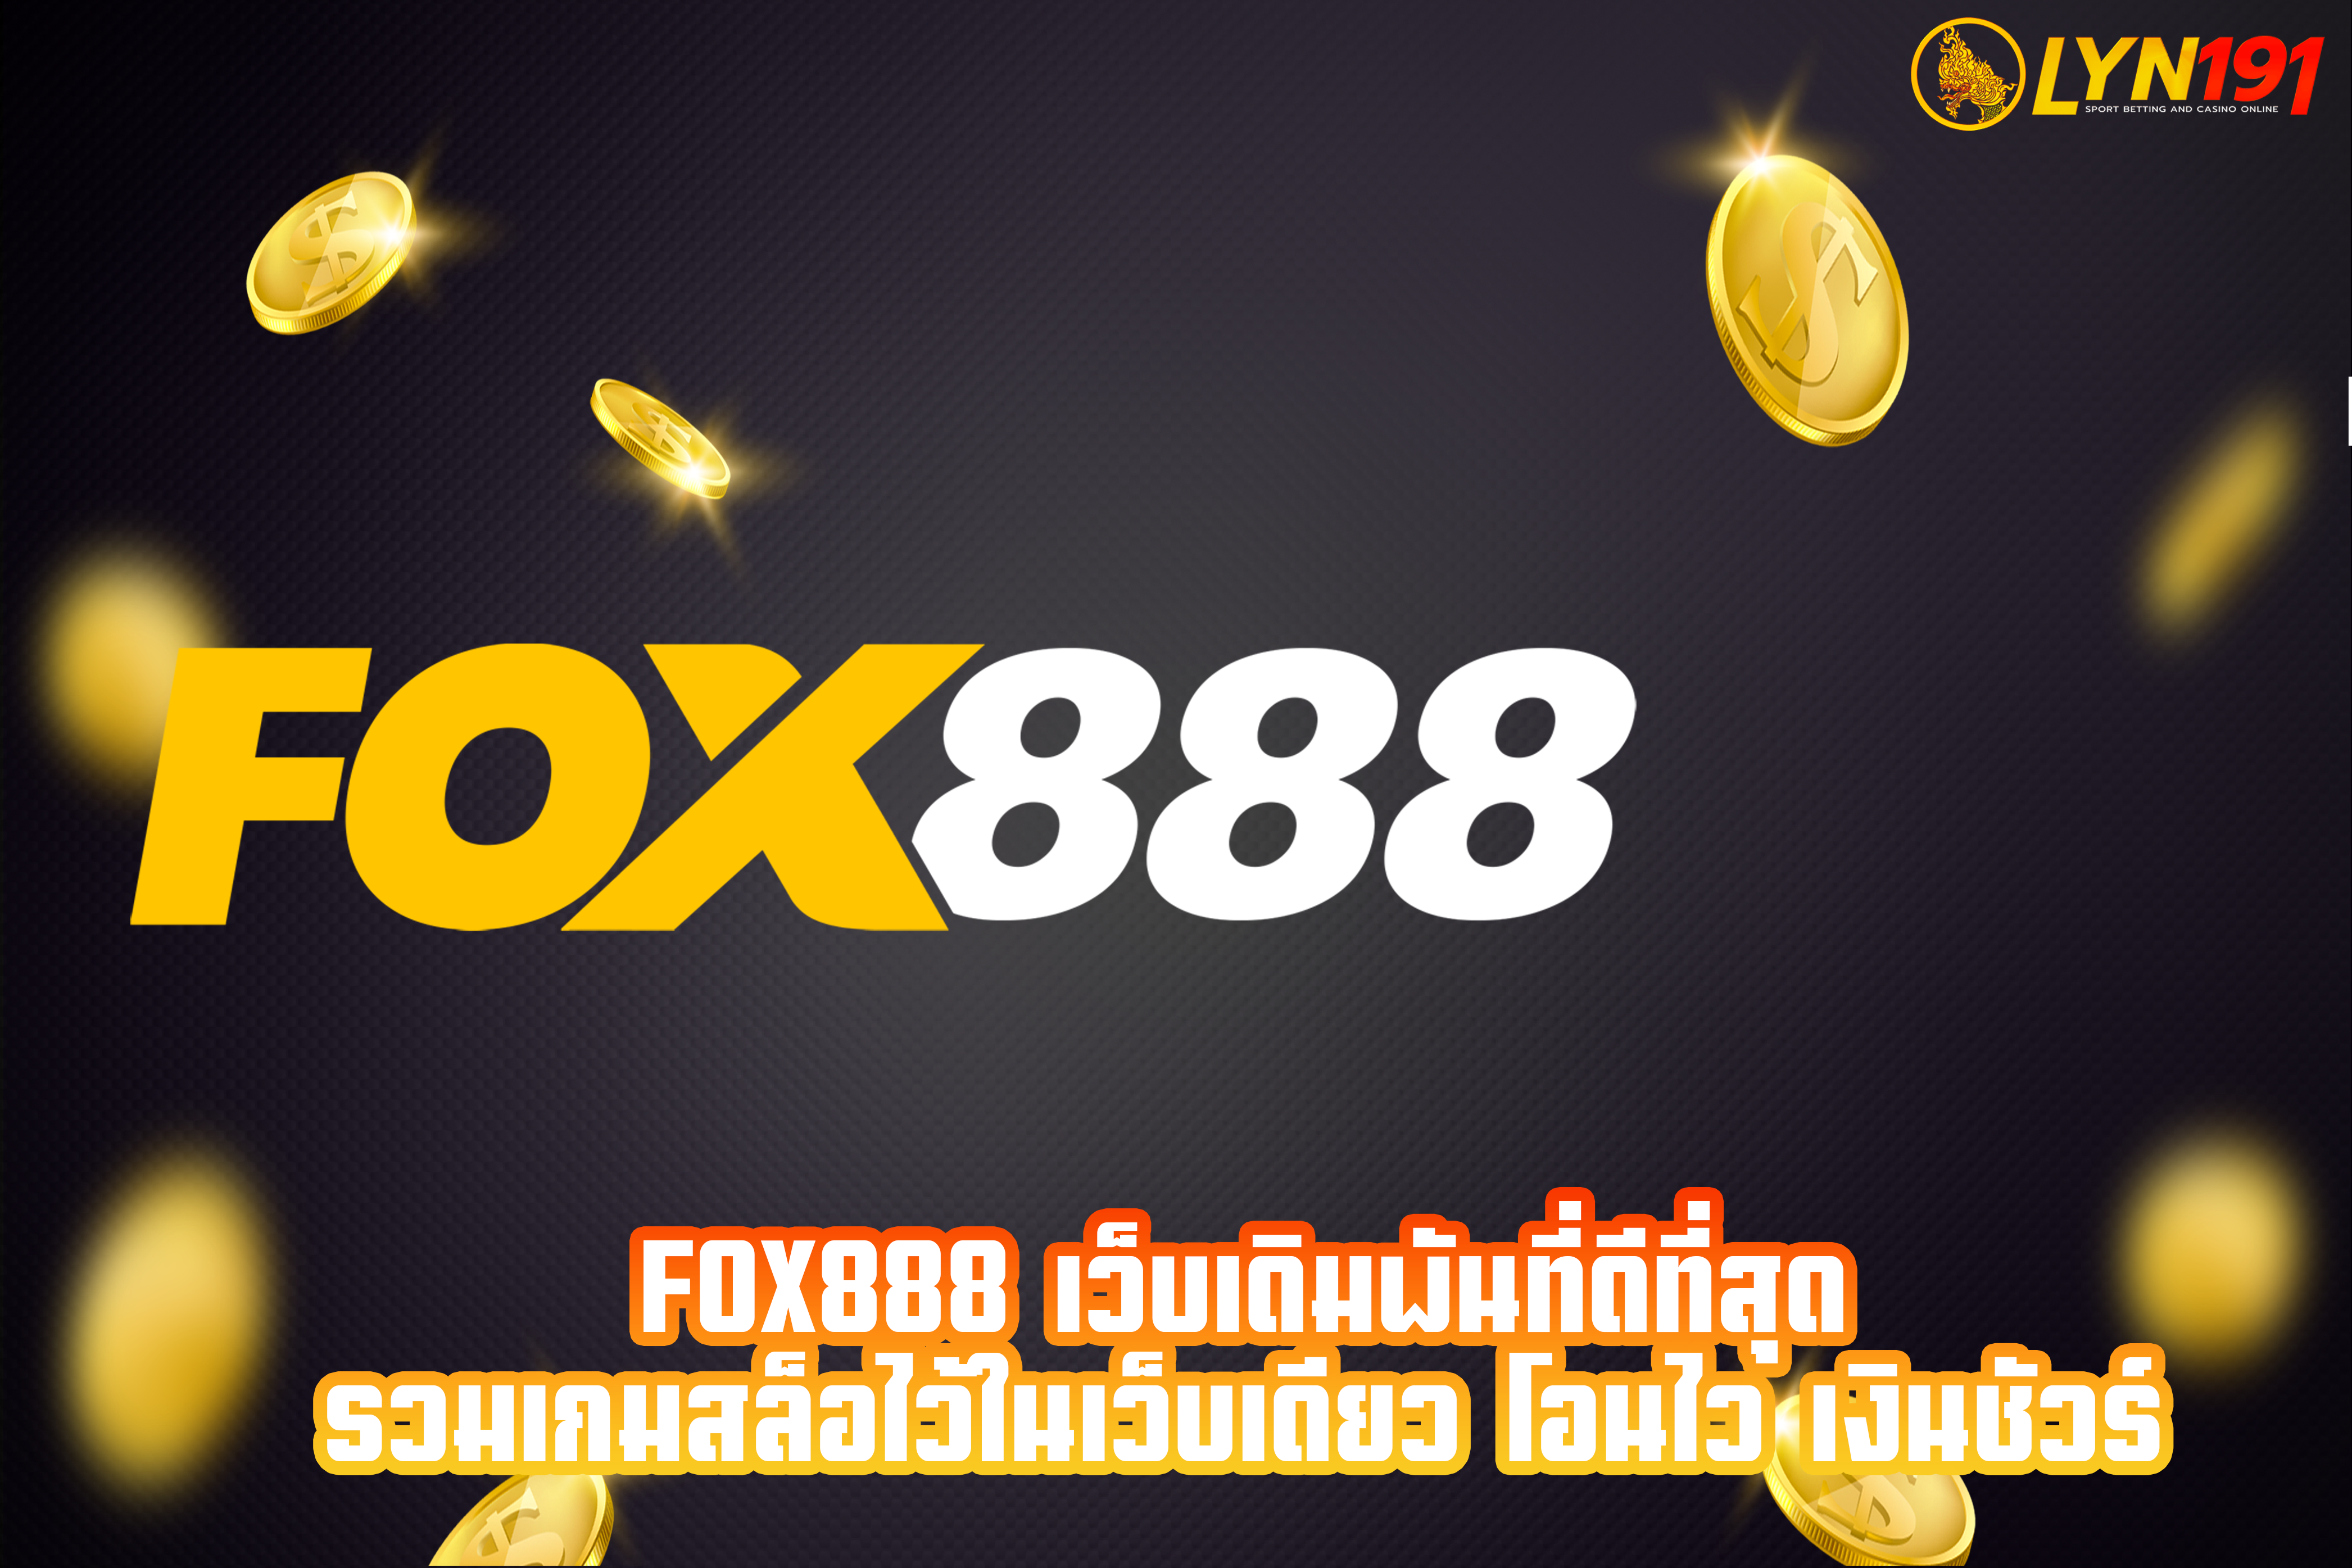 fox888 เว็บเดิมพันที่ดีที่สุด รวมเกมสล็อไว้ในเว็บเดียว โอนไว เงินชัวร์